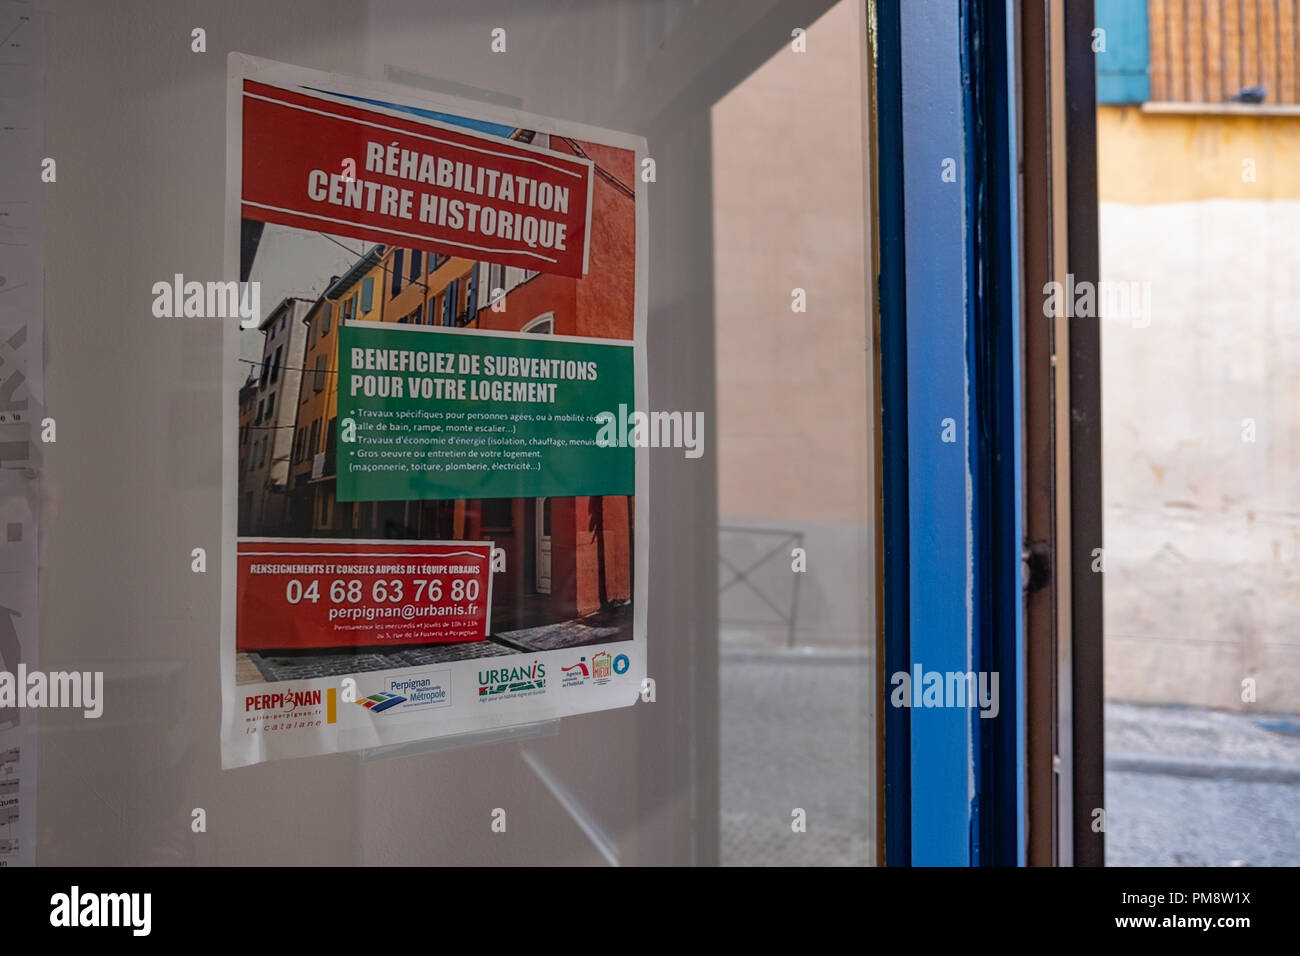 L'affiche qui communique aux voisins le projet de réhabilitation du centre  historique est vu sur la porte de l'office municipal de l'urbanisme. La  mairie de Perpignan, France, a relancé une nouvelle rénovation